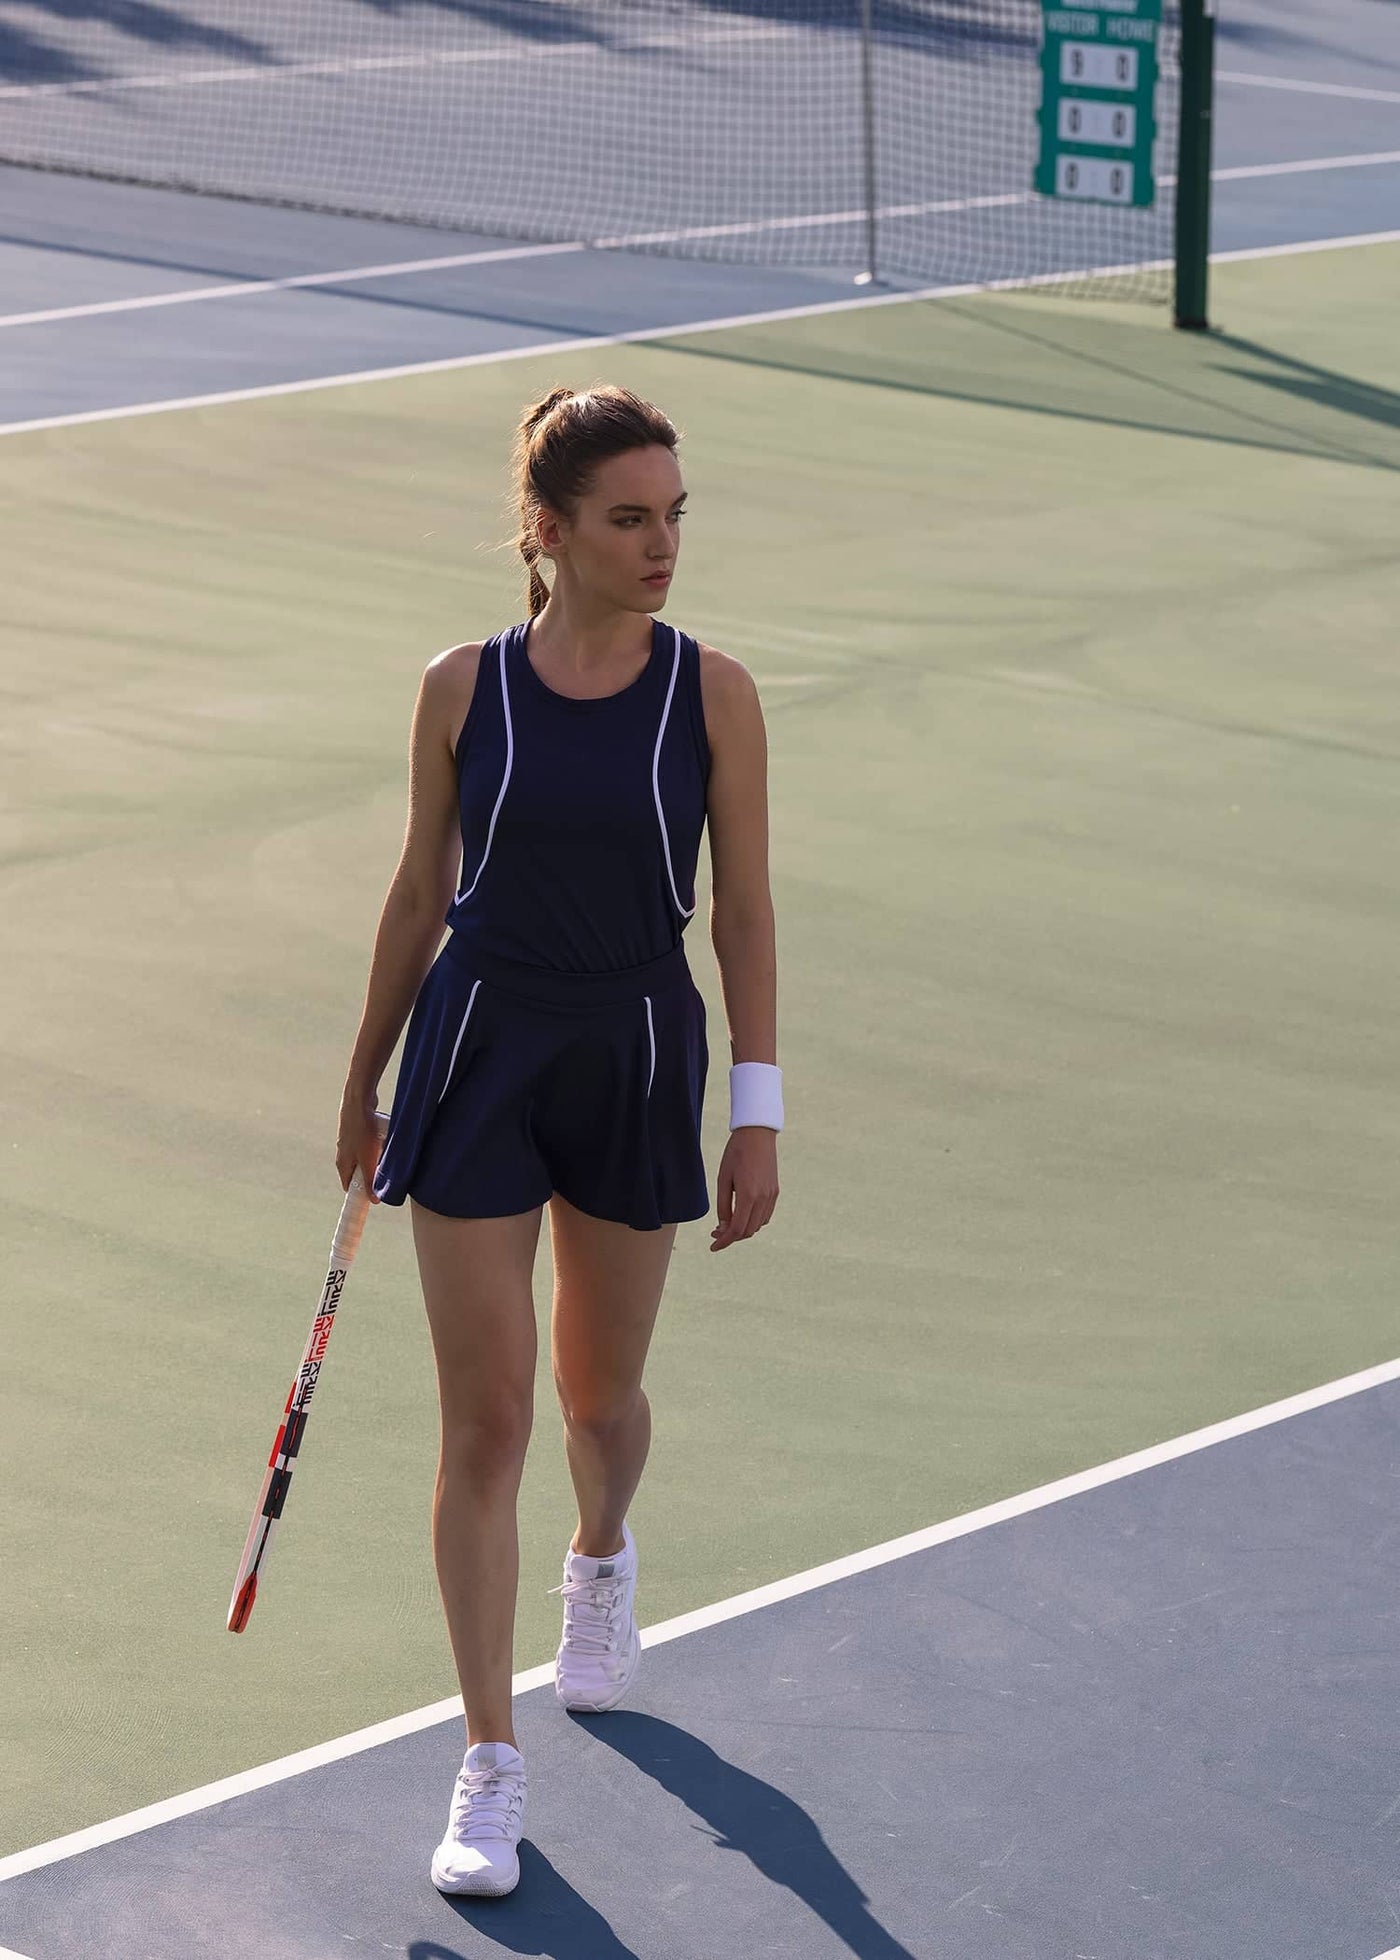 Tennis set (skirt + shirt) named after Anett Kontaveit